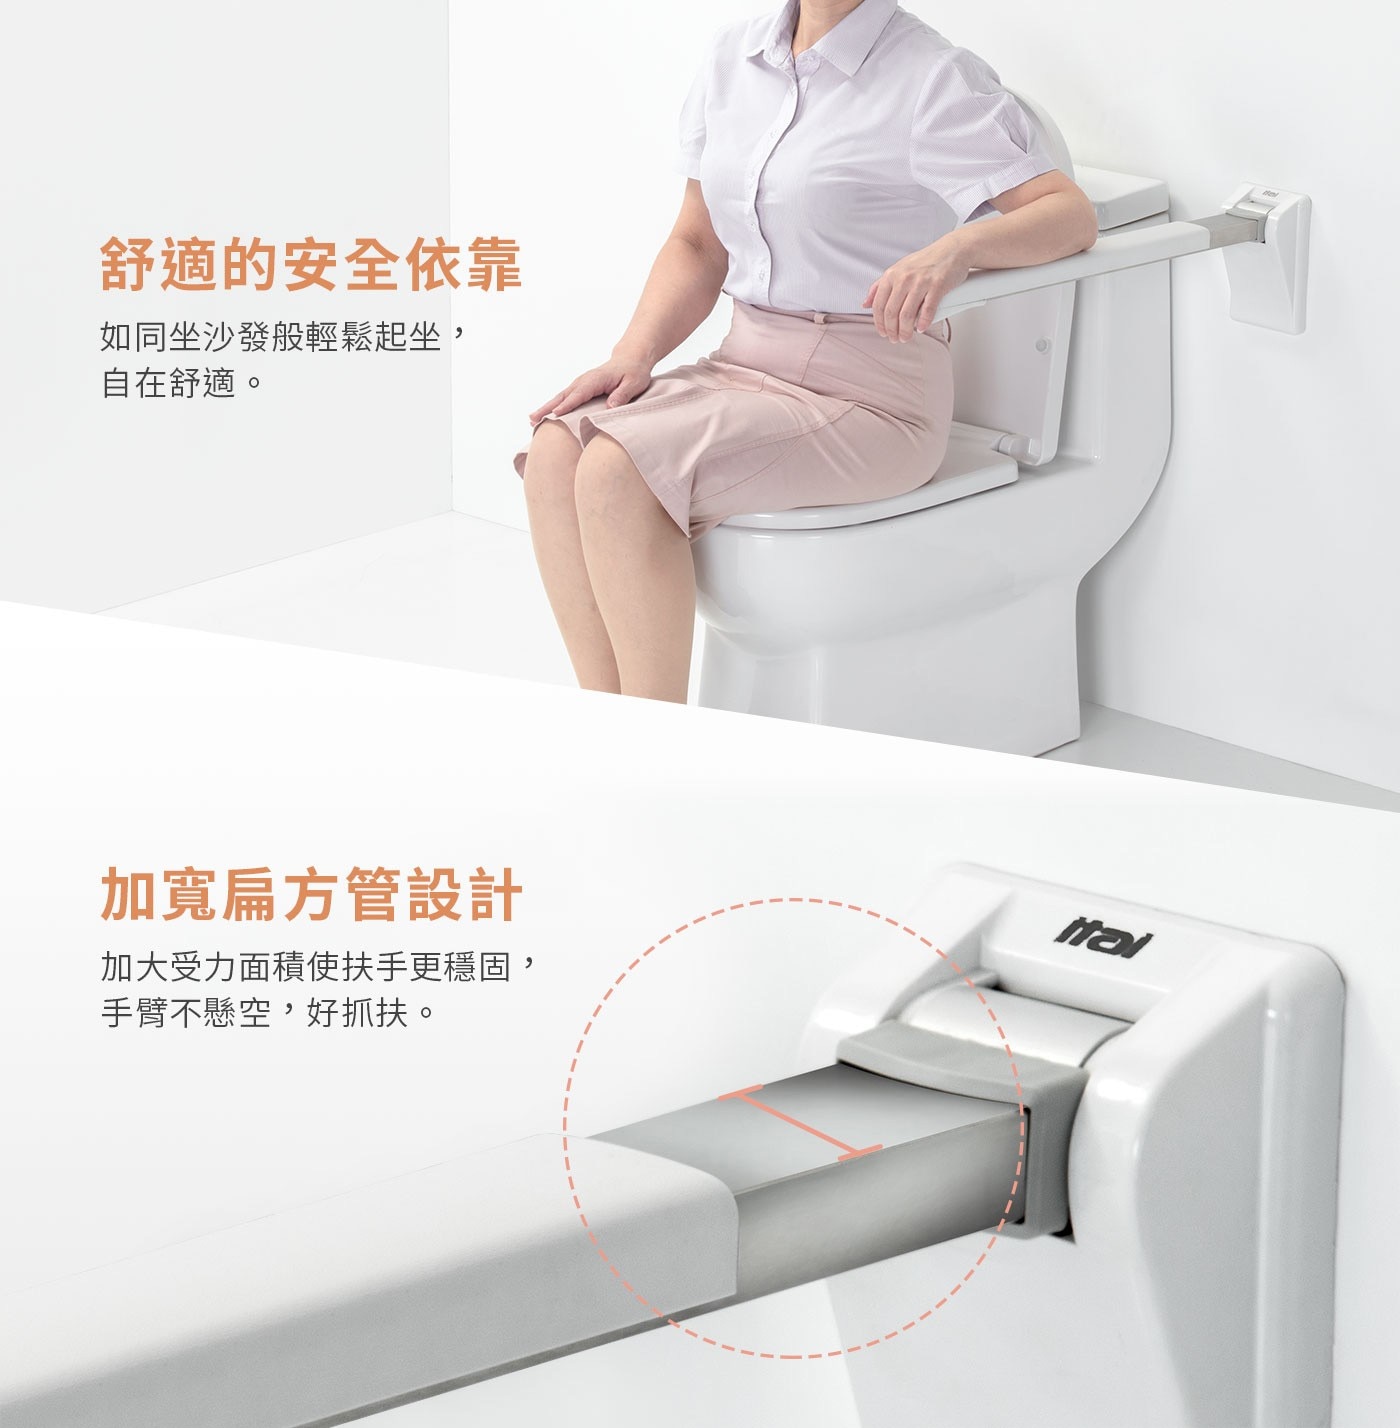 itai一太上翻安全扶手，浴廁安全輔具，給予如廁時舒適的安全依靠，台灣SGS檢驗認證，承重115KG，優質304不鏽鋼材質，加大受力面積，使抓扶更穩固手臂不懸空。